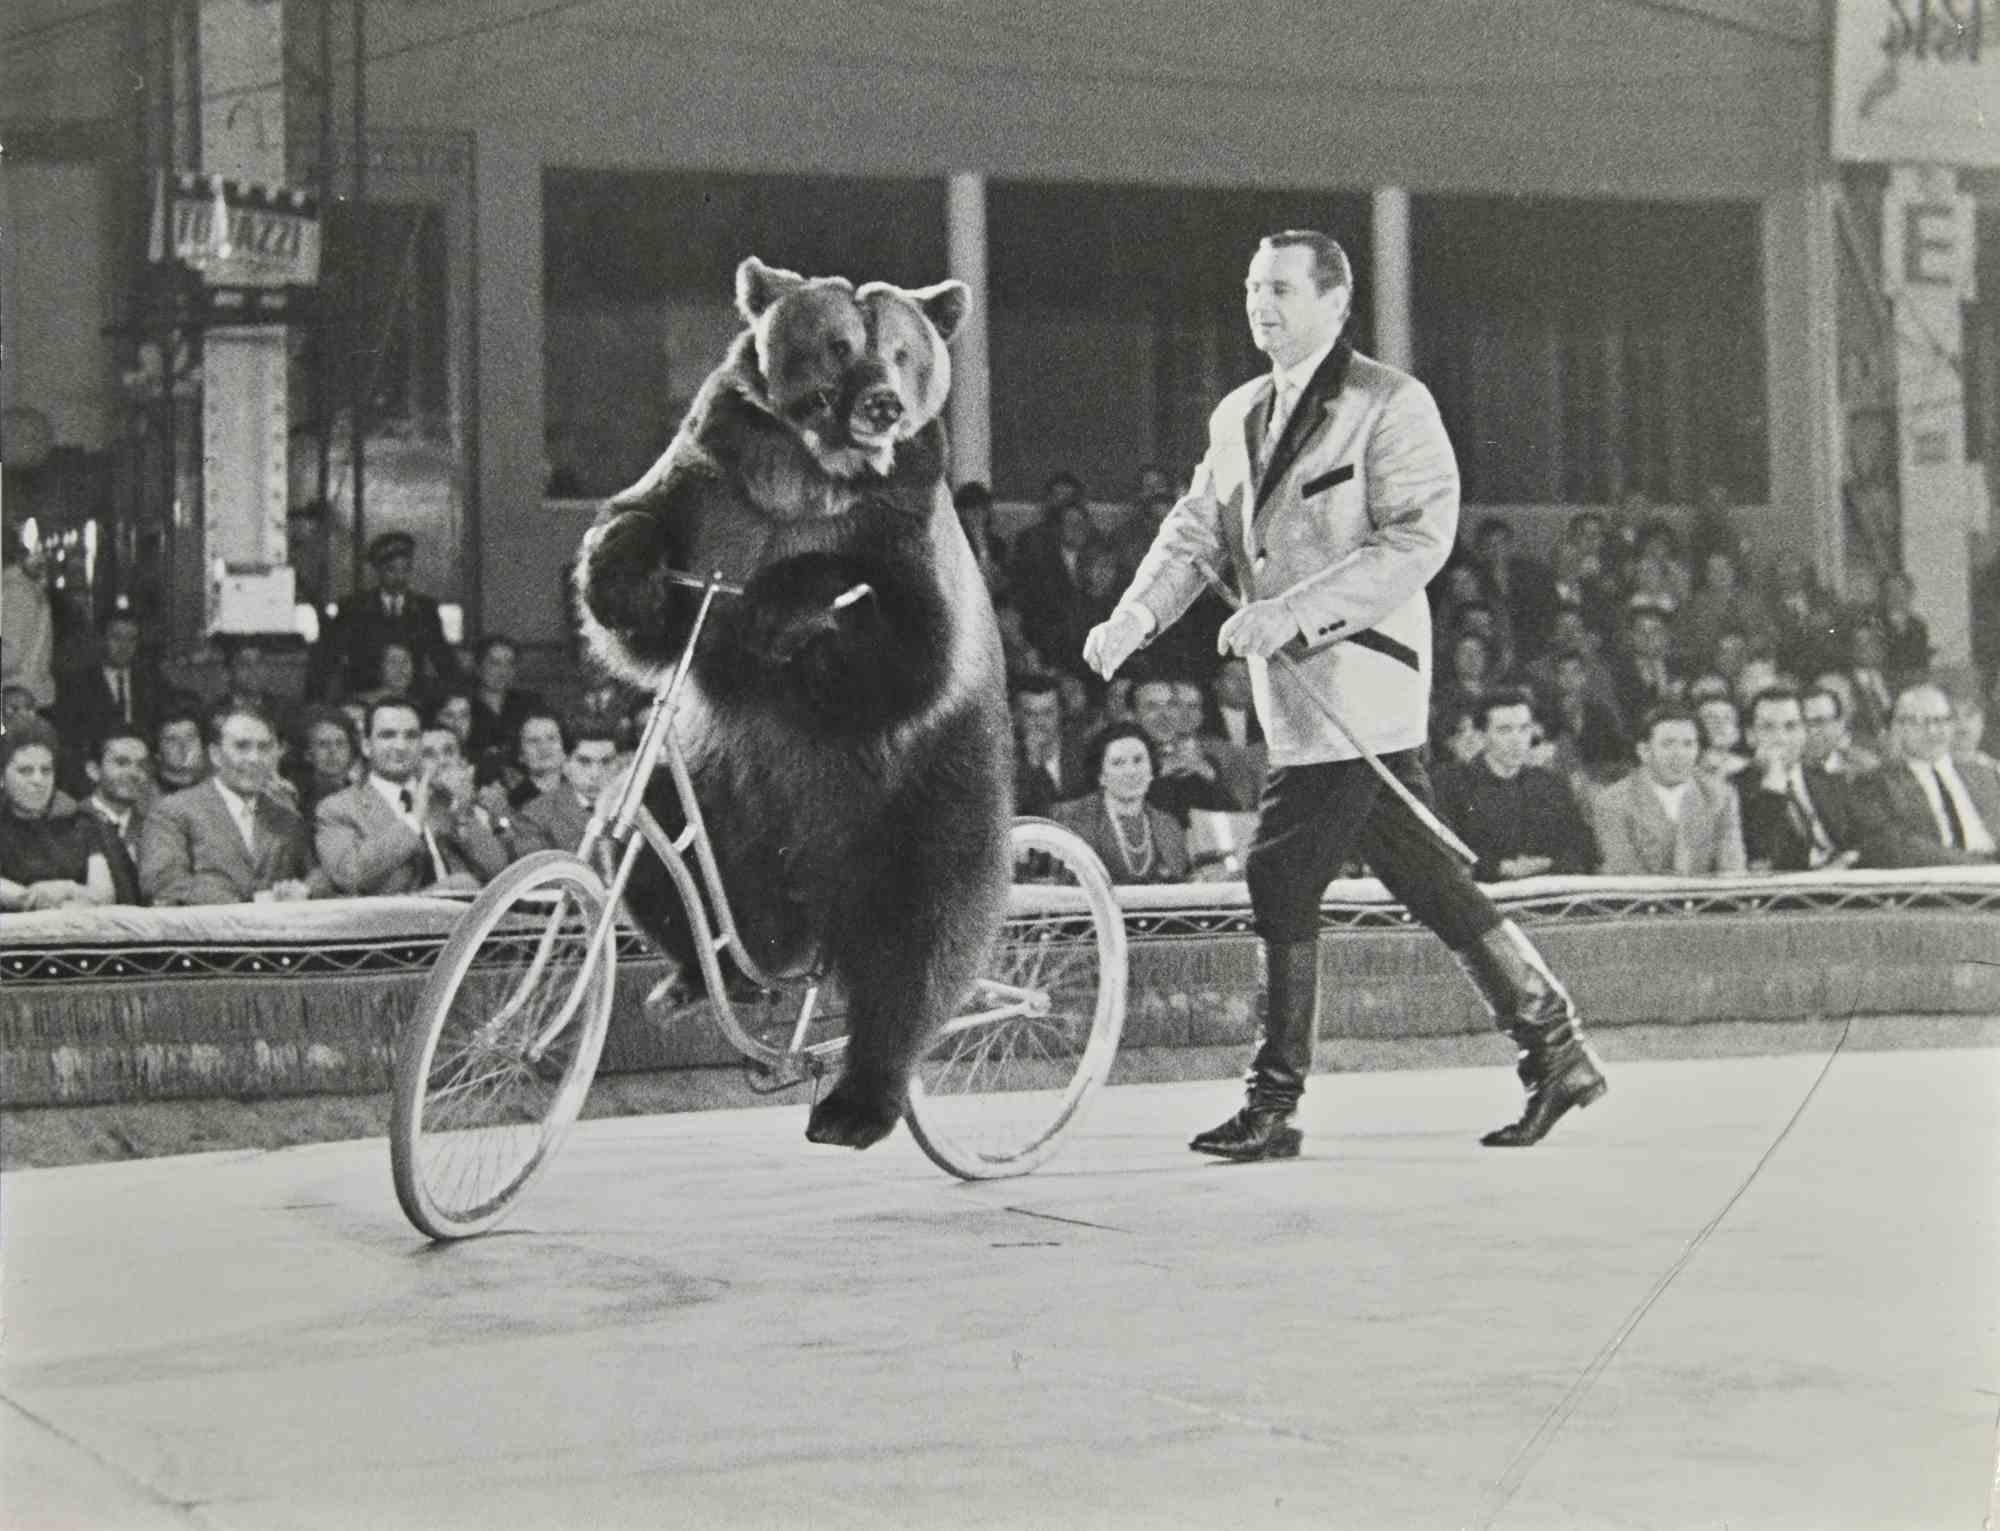 Biking Bear - Photograph - 1960s